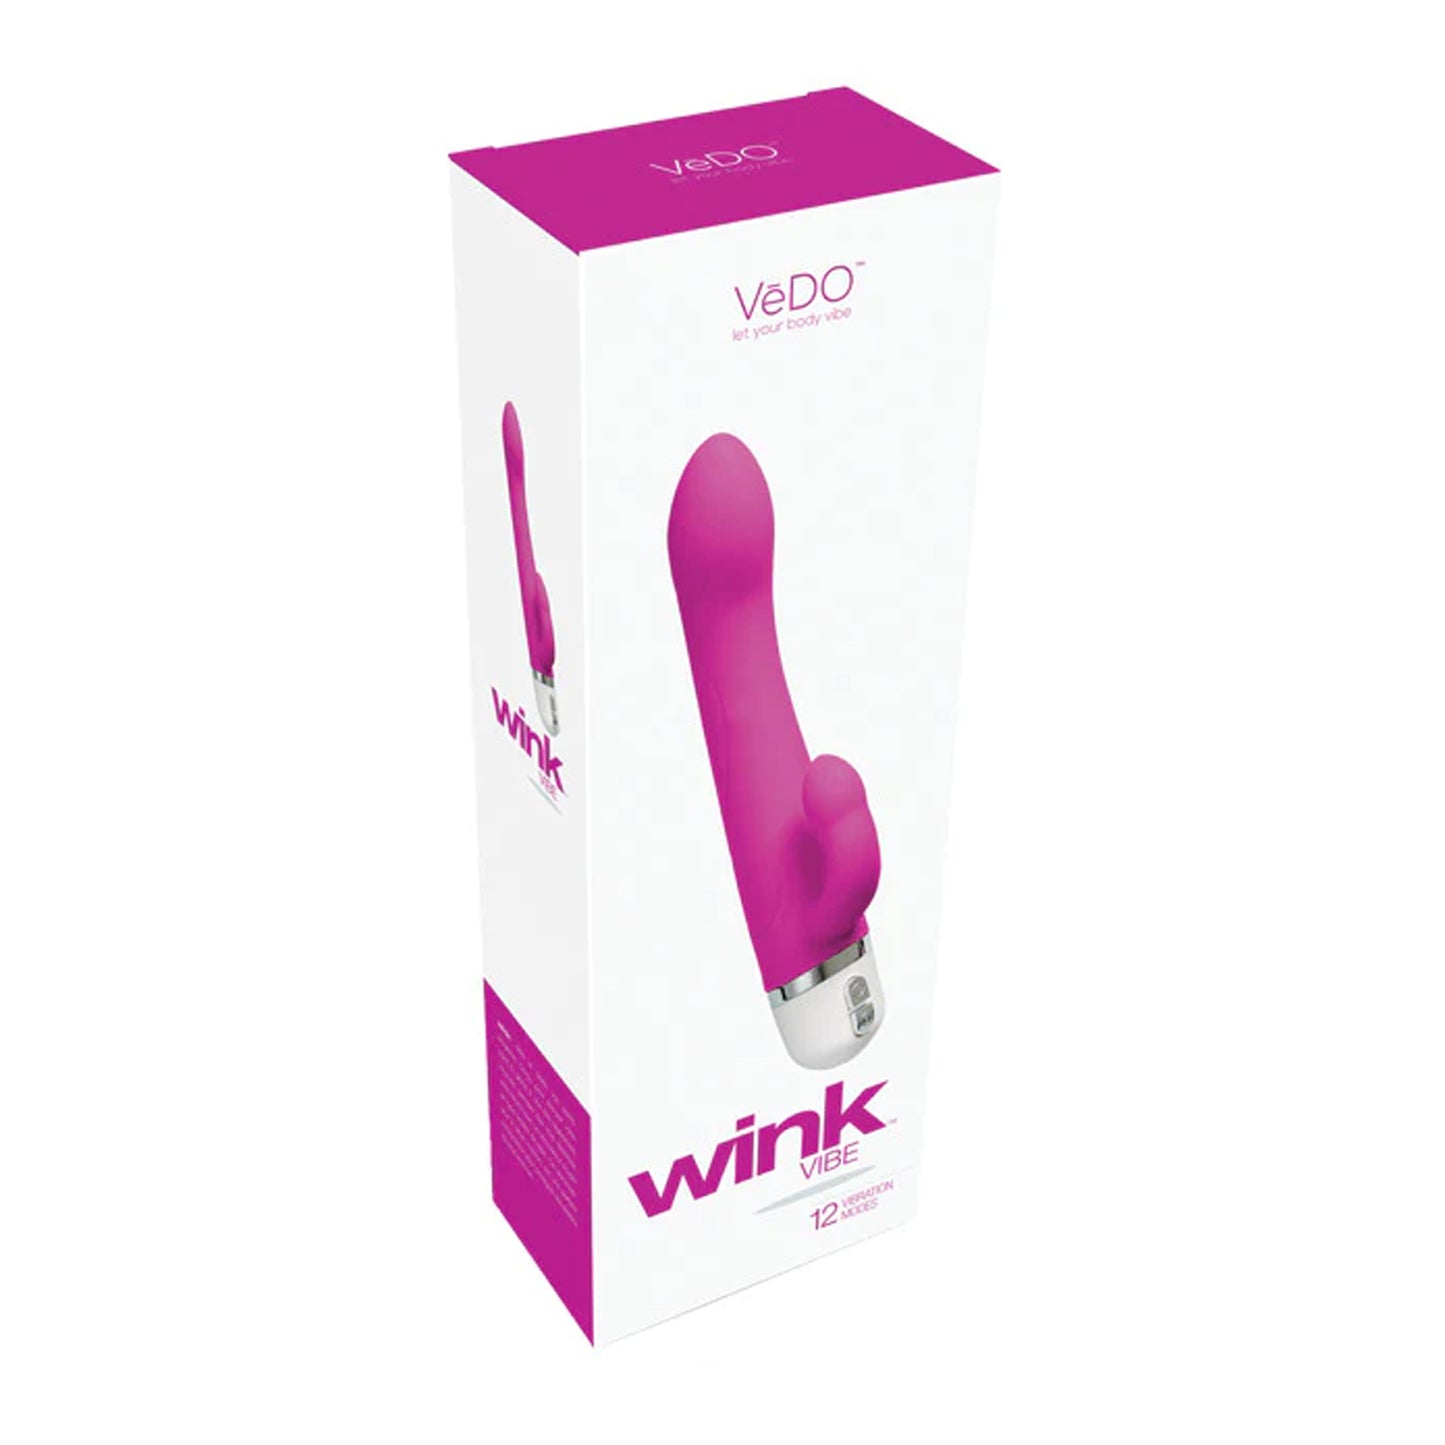 Wink Mini Vibe